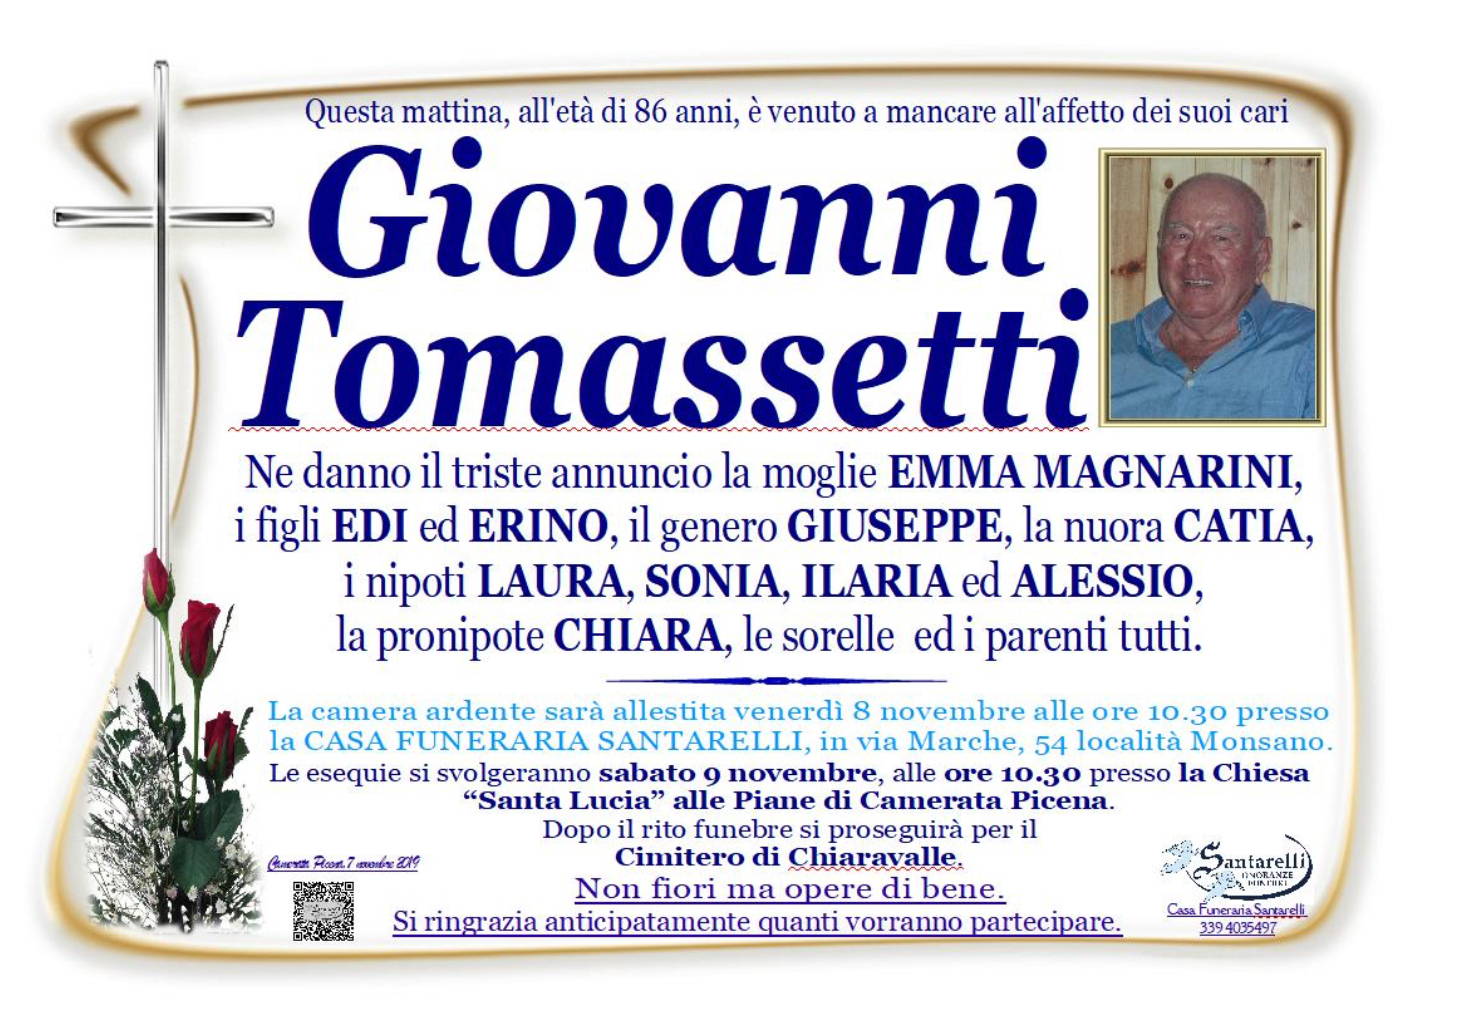 Giovanni Tomassetti